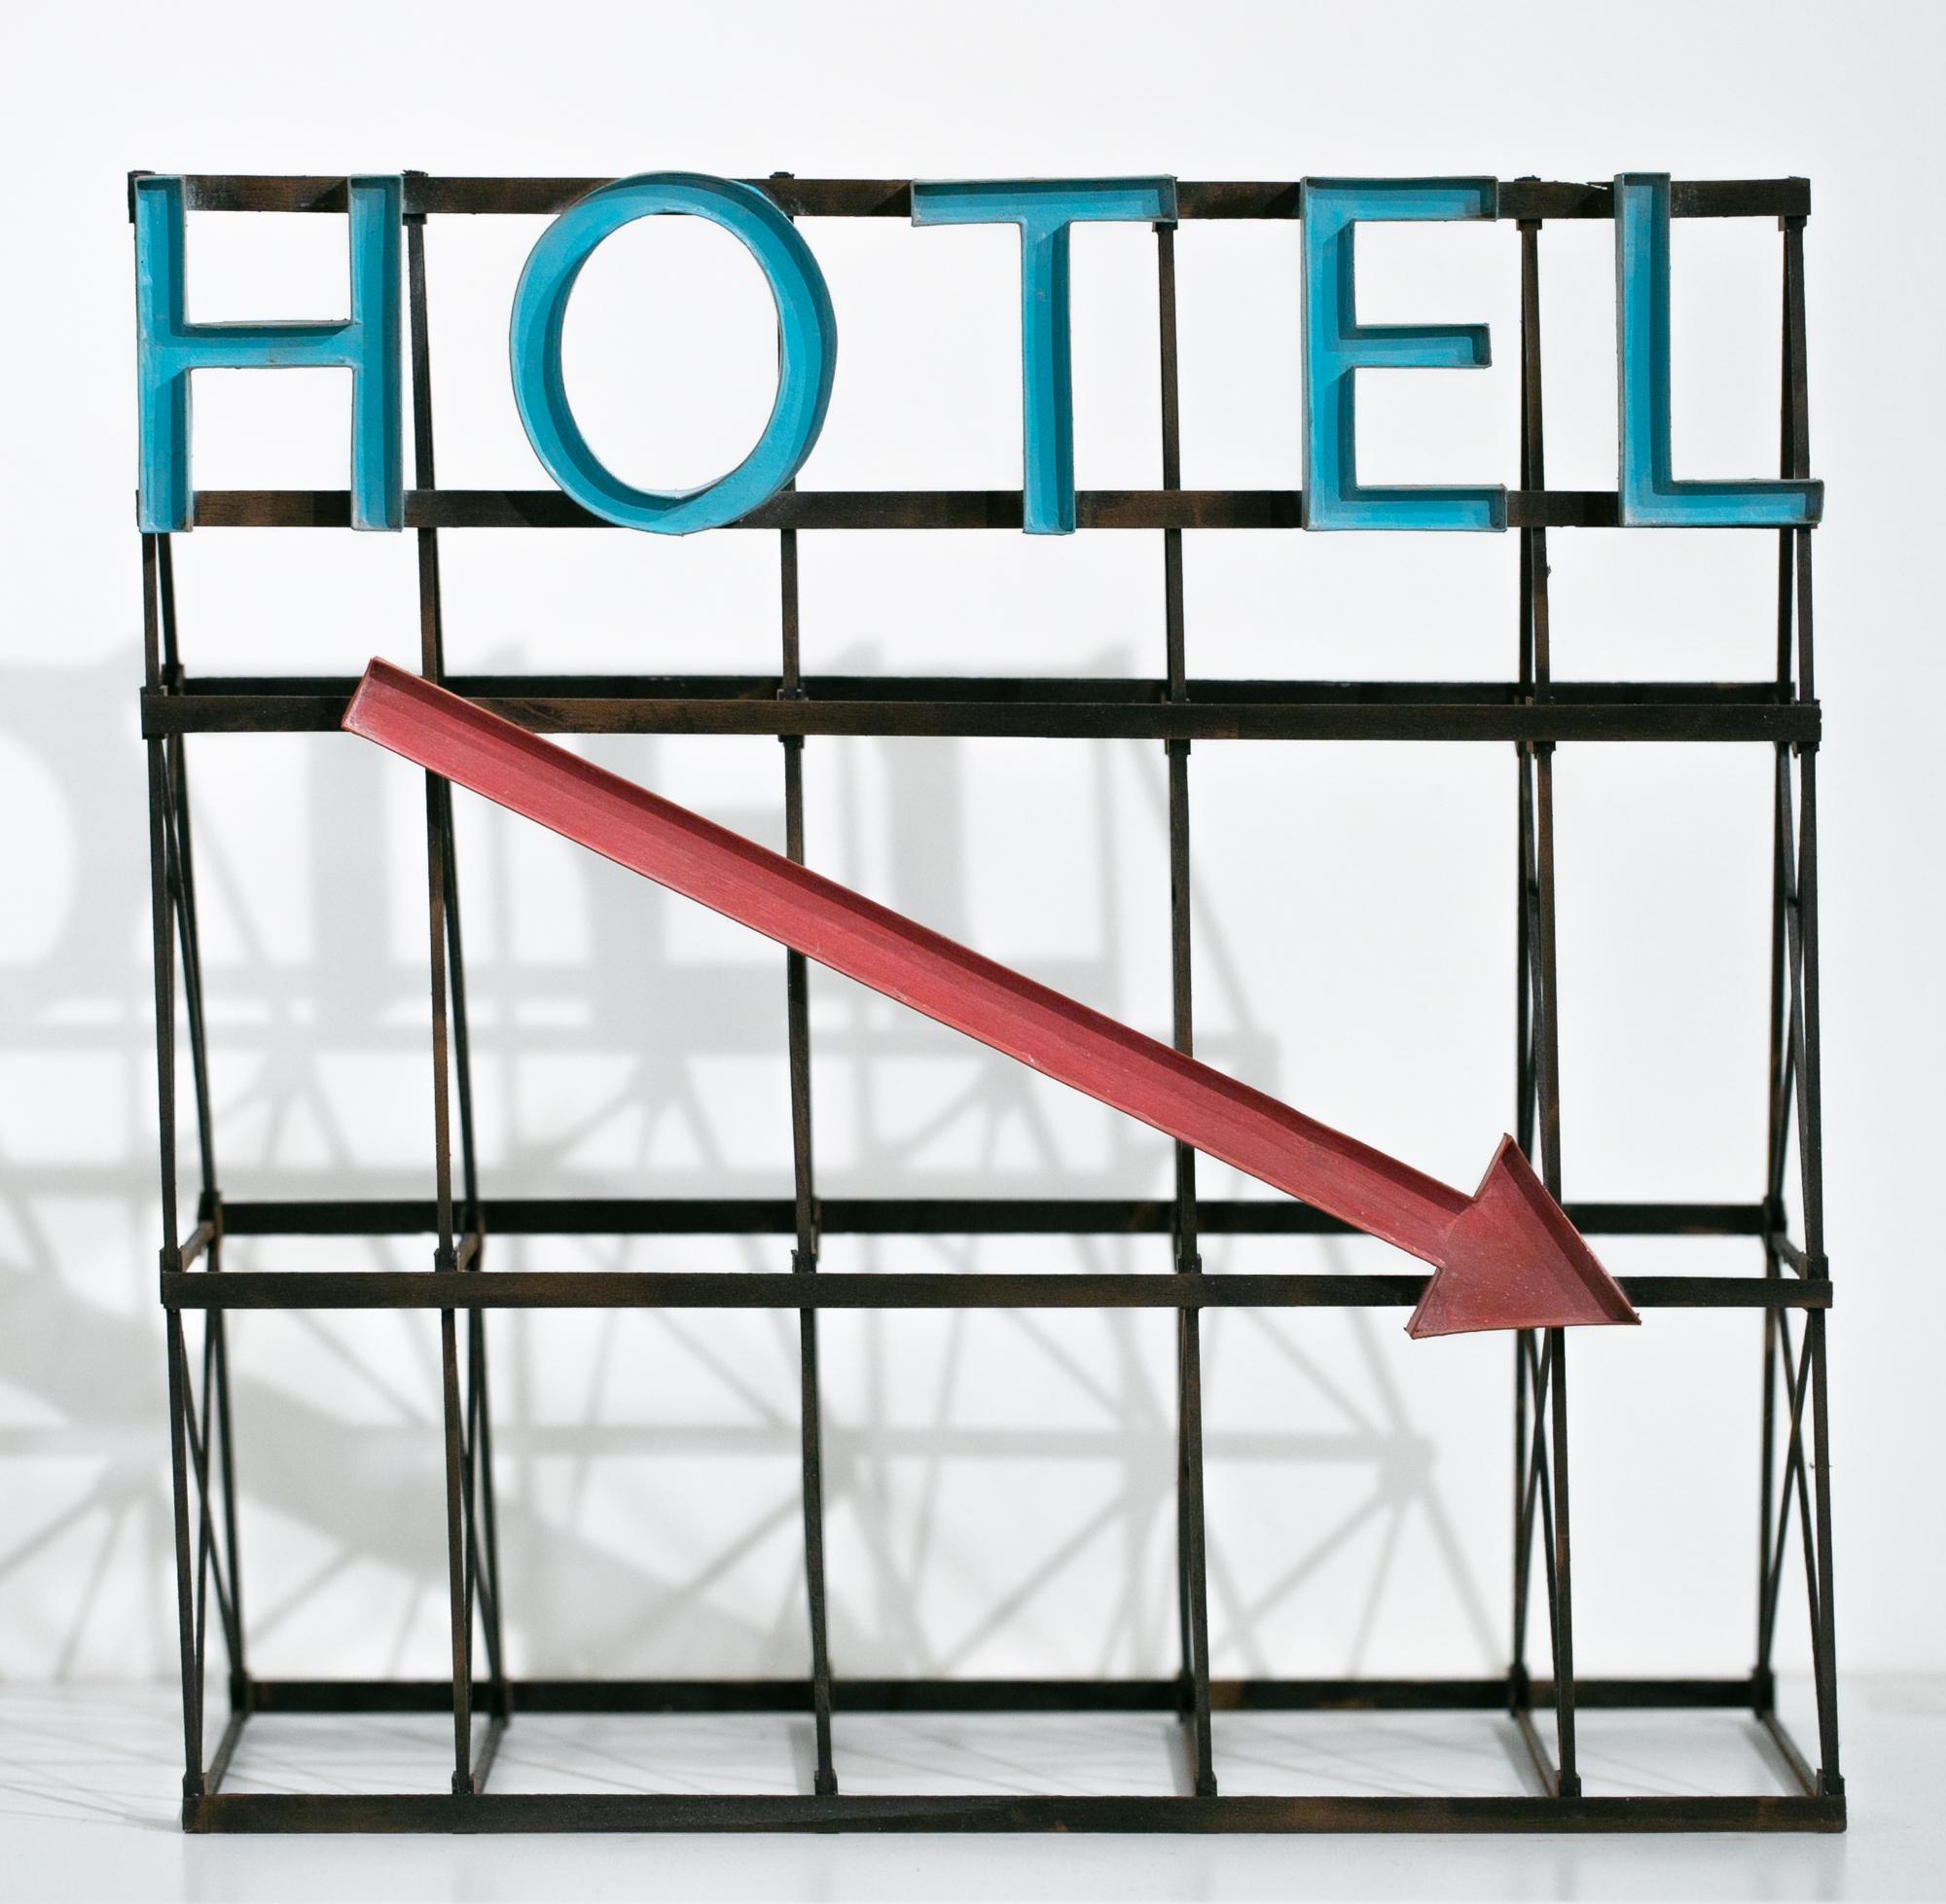 ""Hotel (Blau/Rot)", Miniatur, Architektur, Schild, Stadtlandschaft, Skulptur